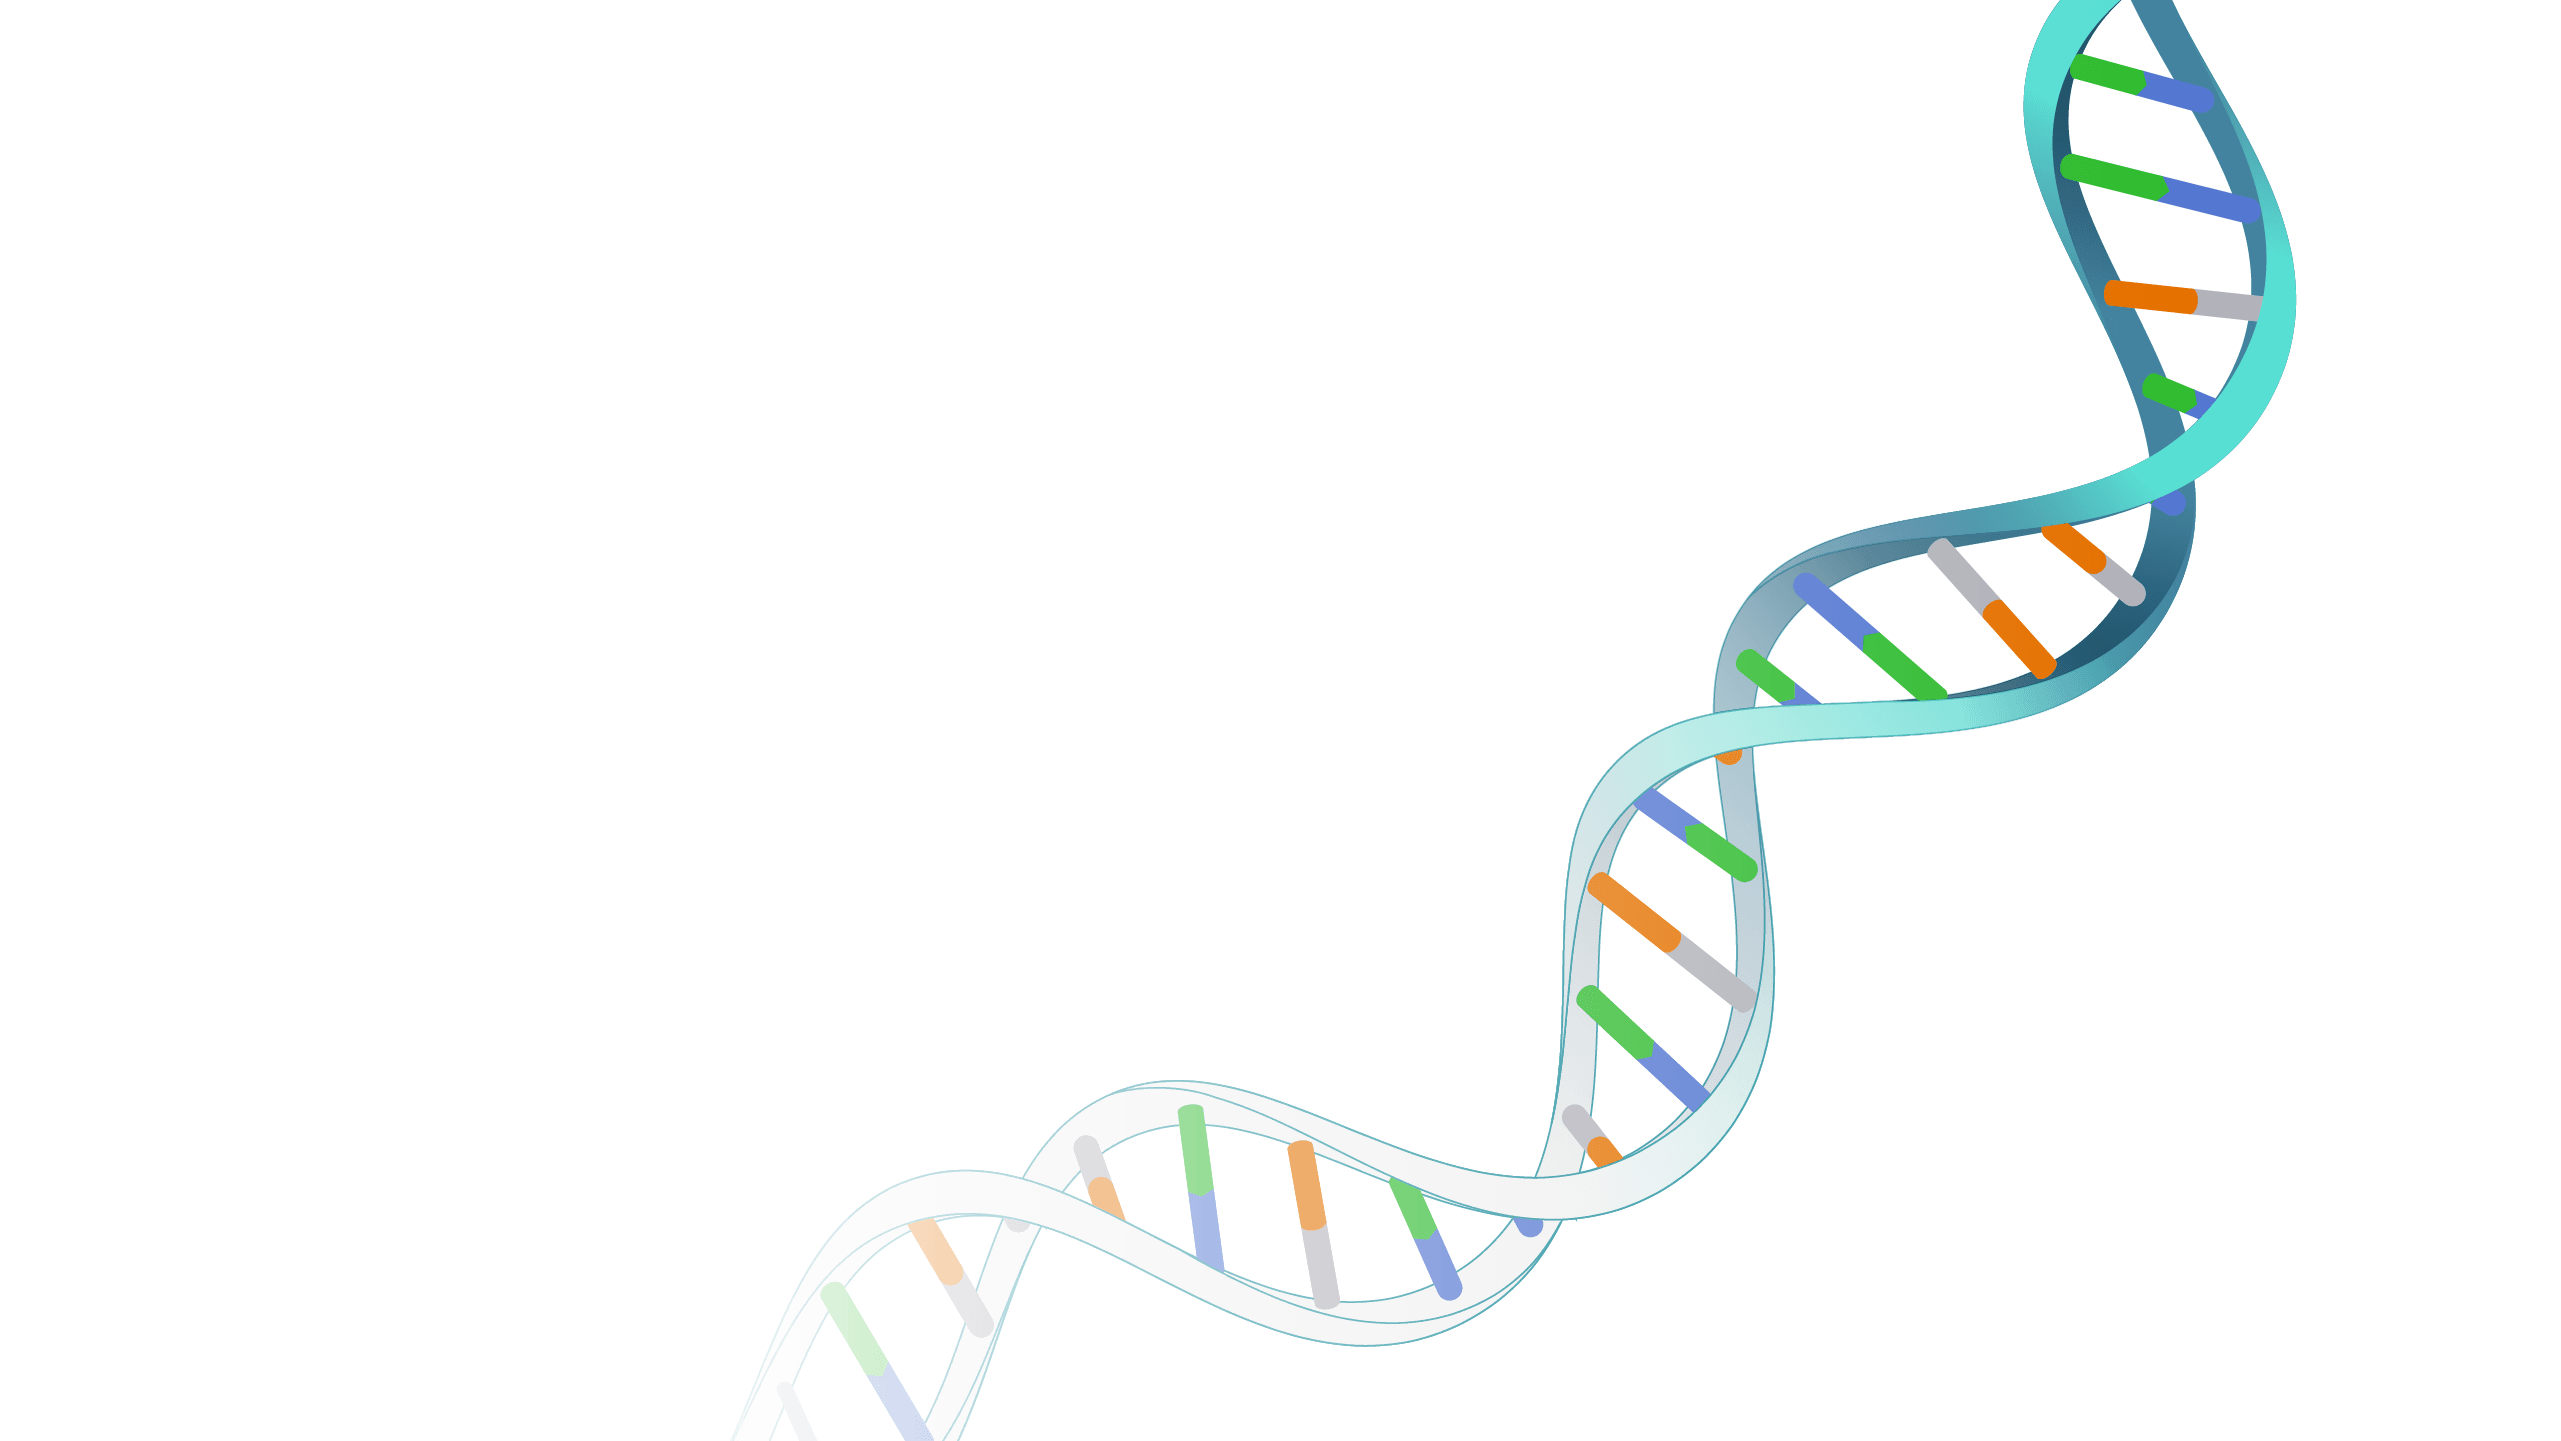 regulación genética - Grado 10 - Quizizz